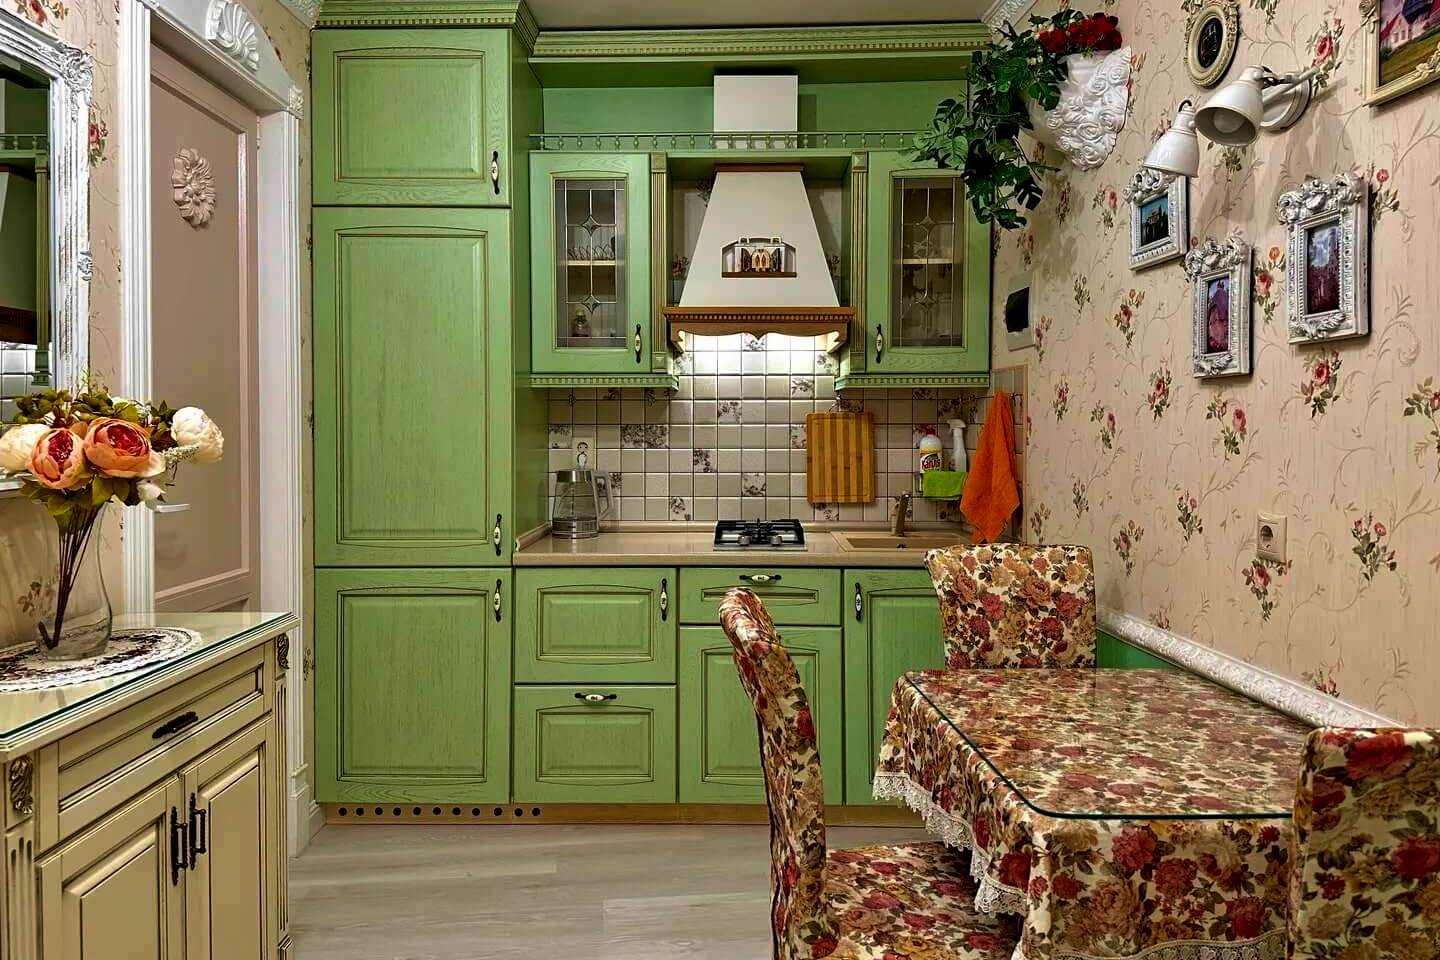 Фасад кухни окрашен в зеленый цвет.